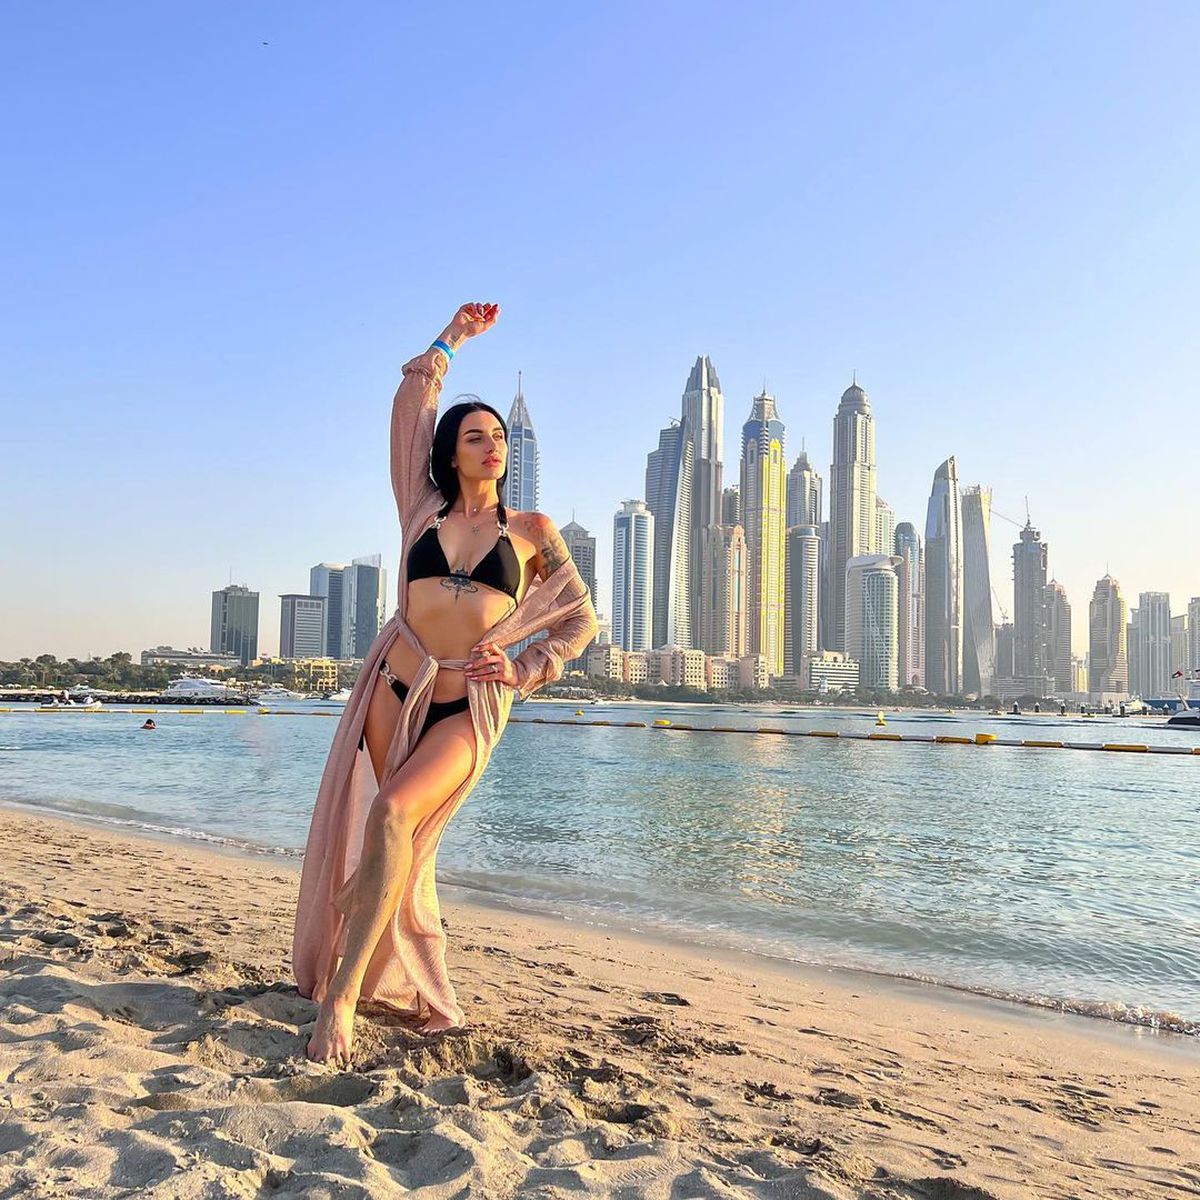 Ana Porgras, topless pe plajă la Survivor All Stars » ProTV a difuzat imaginile cu fosta gimnastă fără sutien